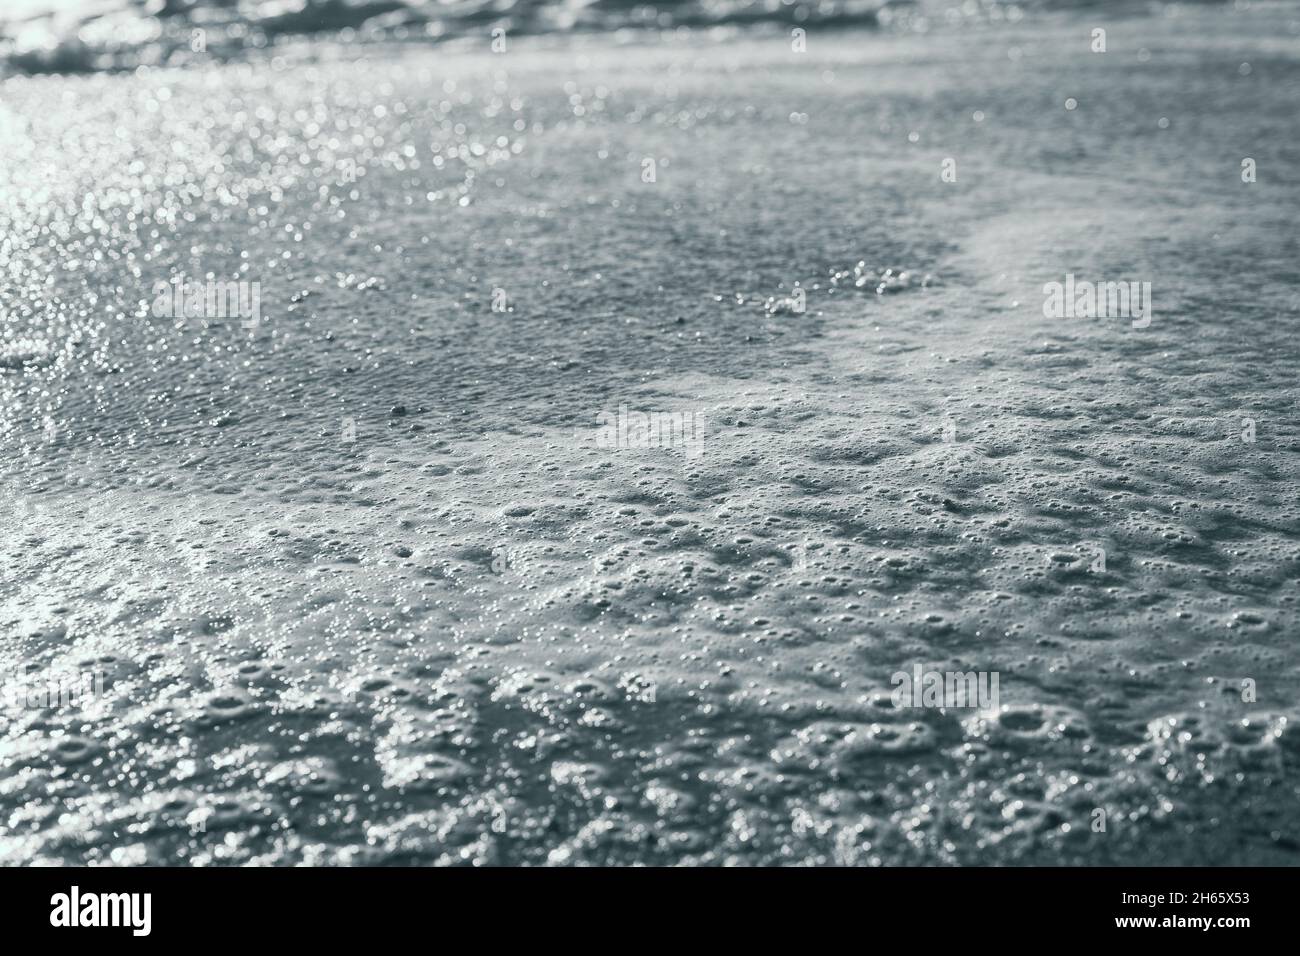 Gros plan sur la mousse sur le littoral de la mer avec reflet du soleil sur l'eau.Concept de fond abstrait.Photographie en noir et blanc Banque D'Images